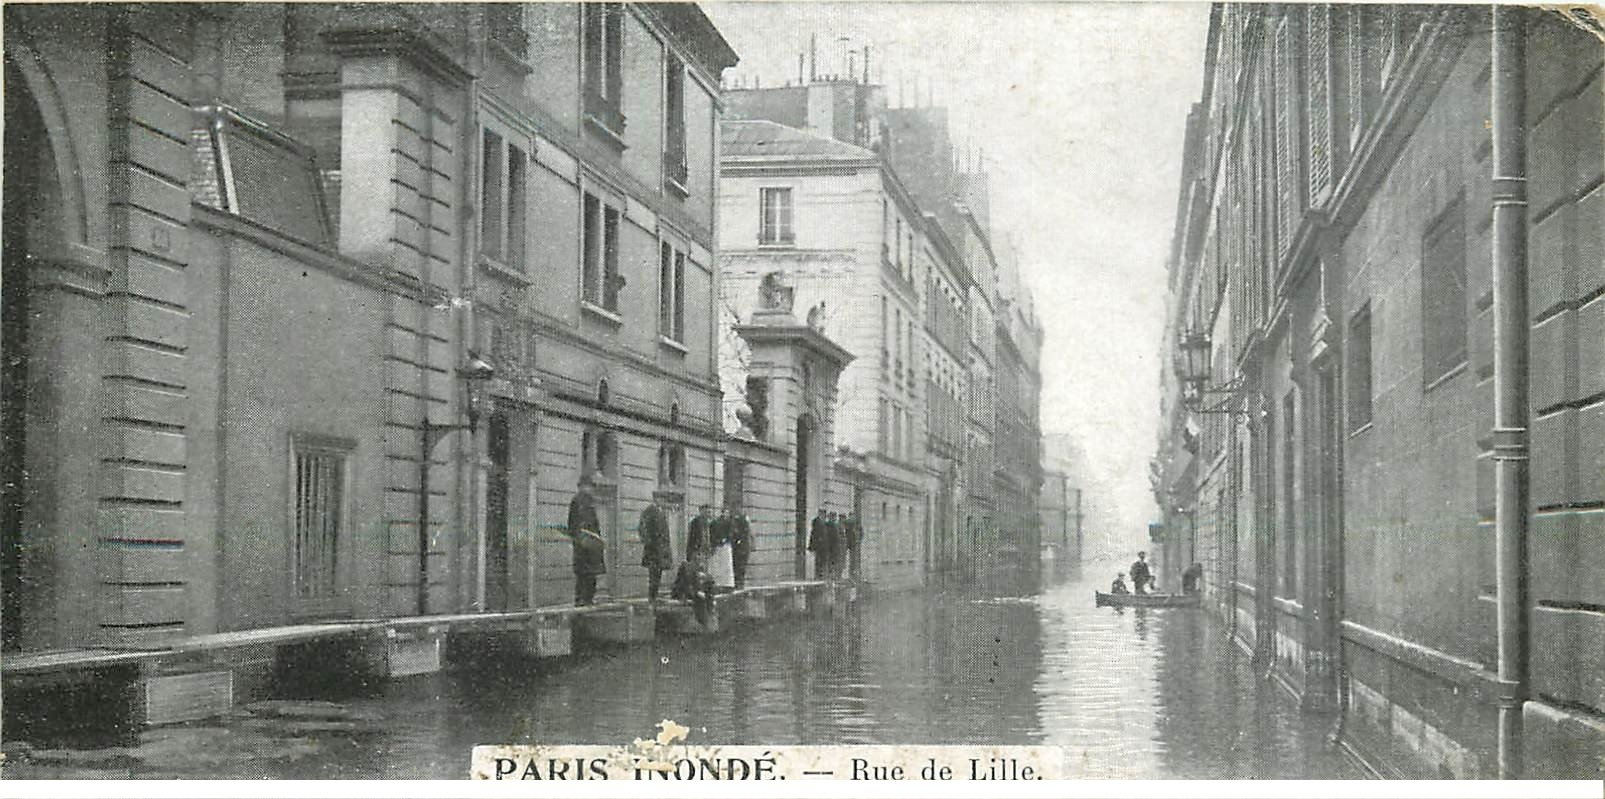 Inondation et Crue de PARIS 07 1910. Rue de Lille. Carte mignonette 13.5 x 7 cm